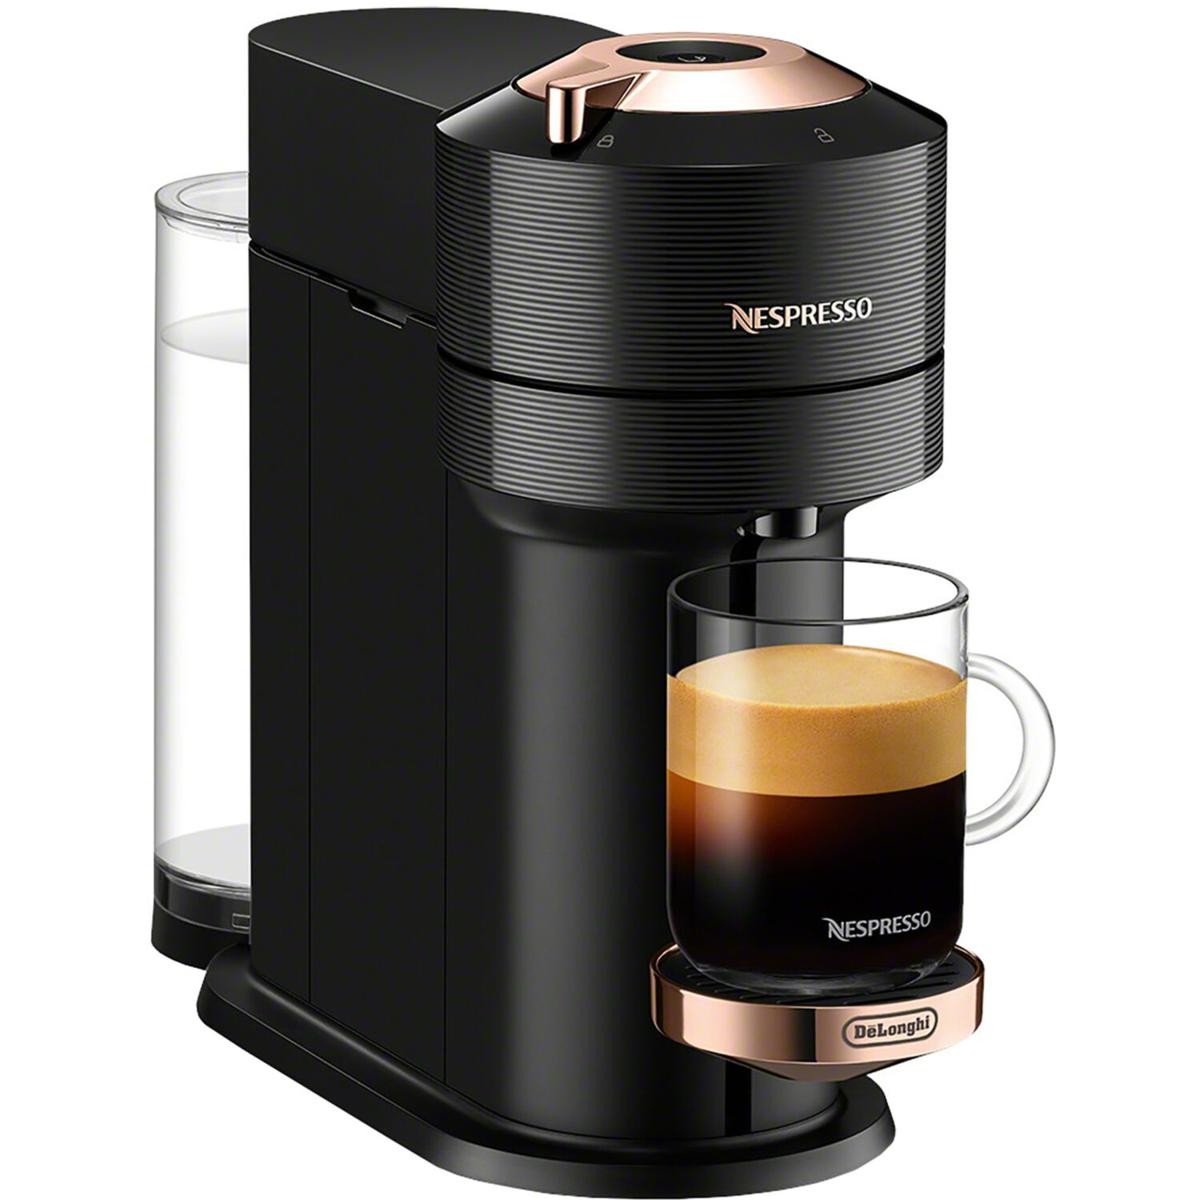 DeLonghi Nespresso Vertuo Next Premium Coffee and Espresso Maker - Black Rose Gold